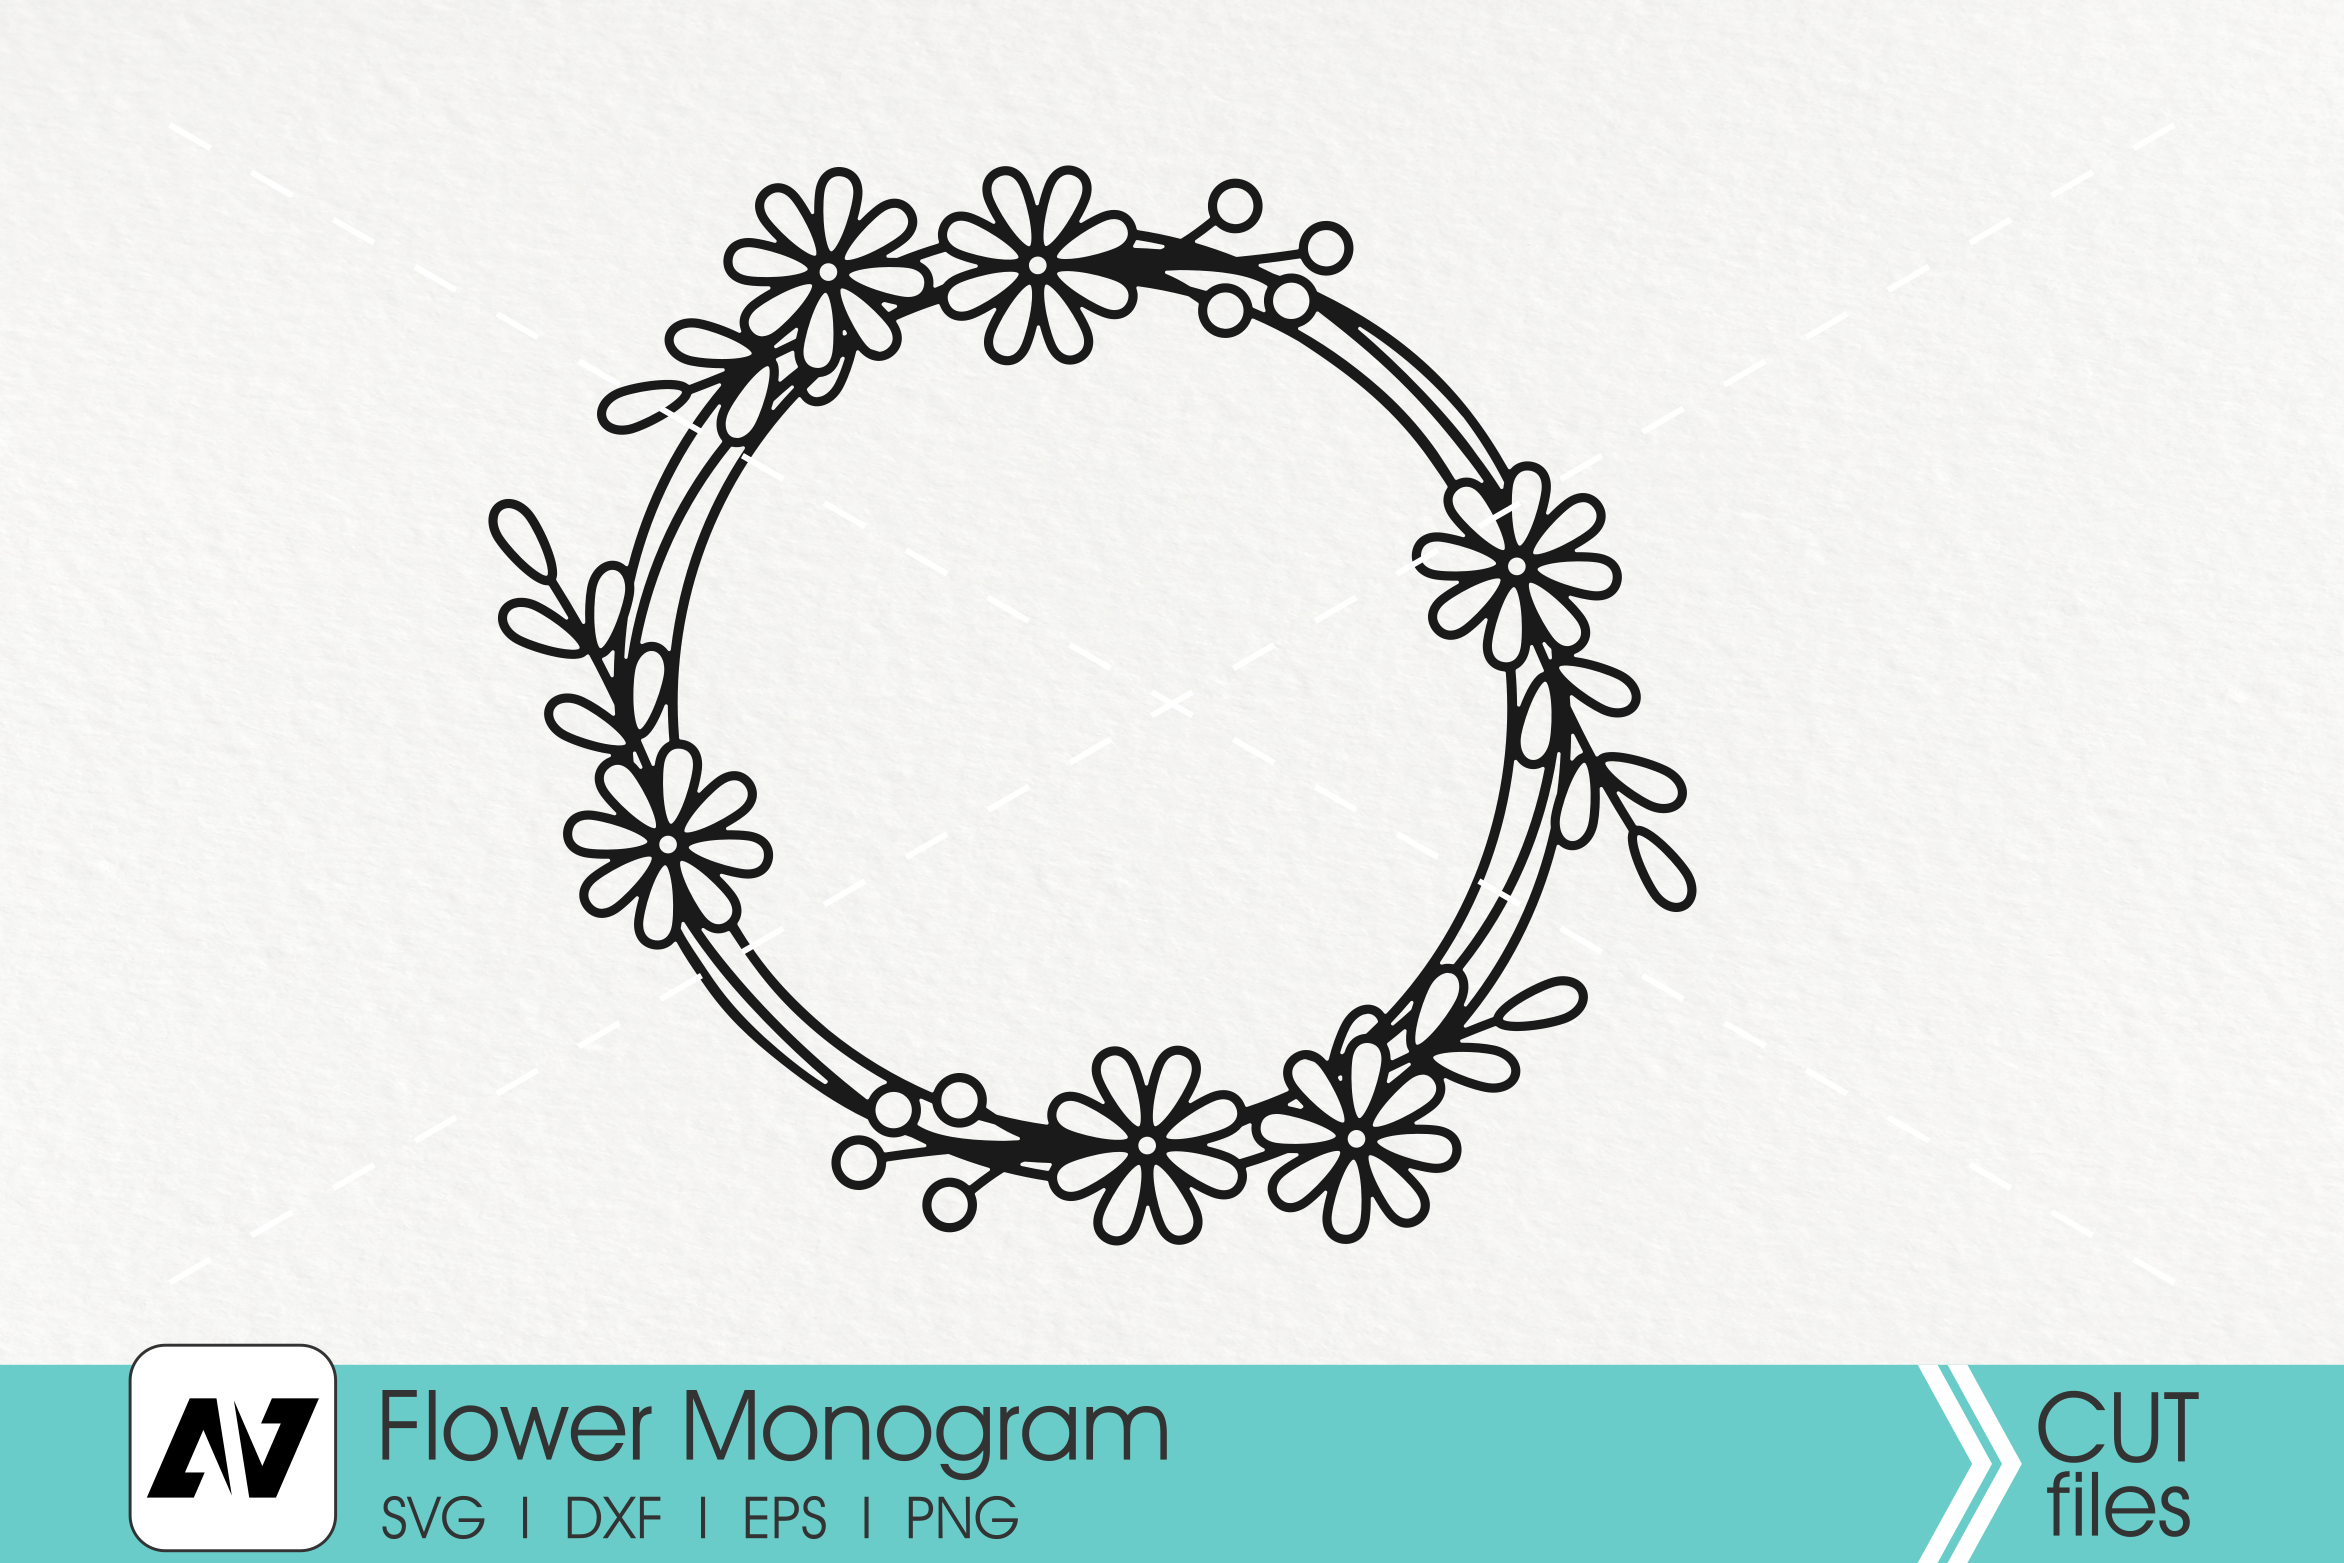 flower monogram,flower svg,flower monogram,flower svg file,floral